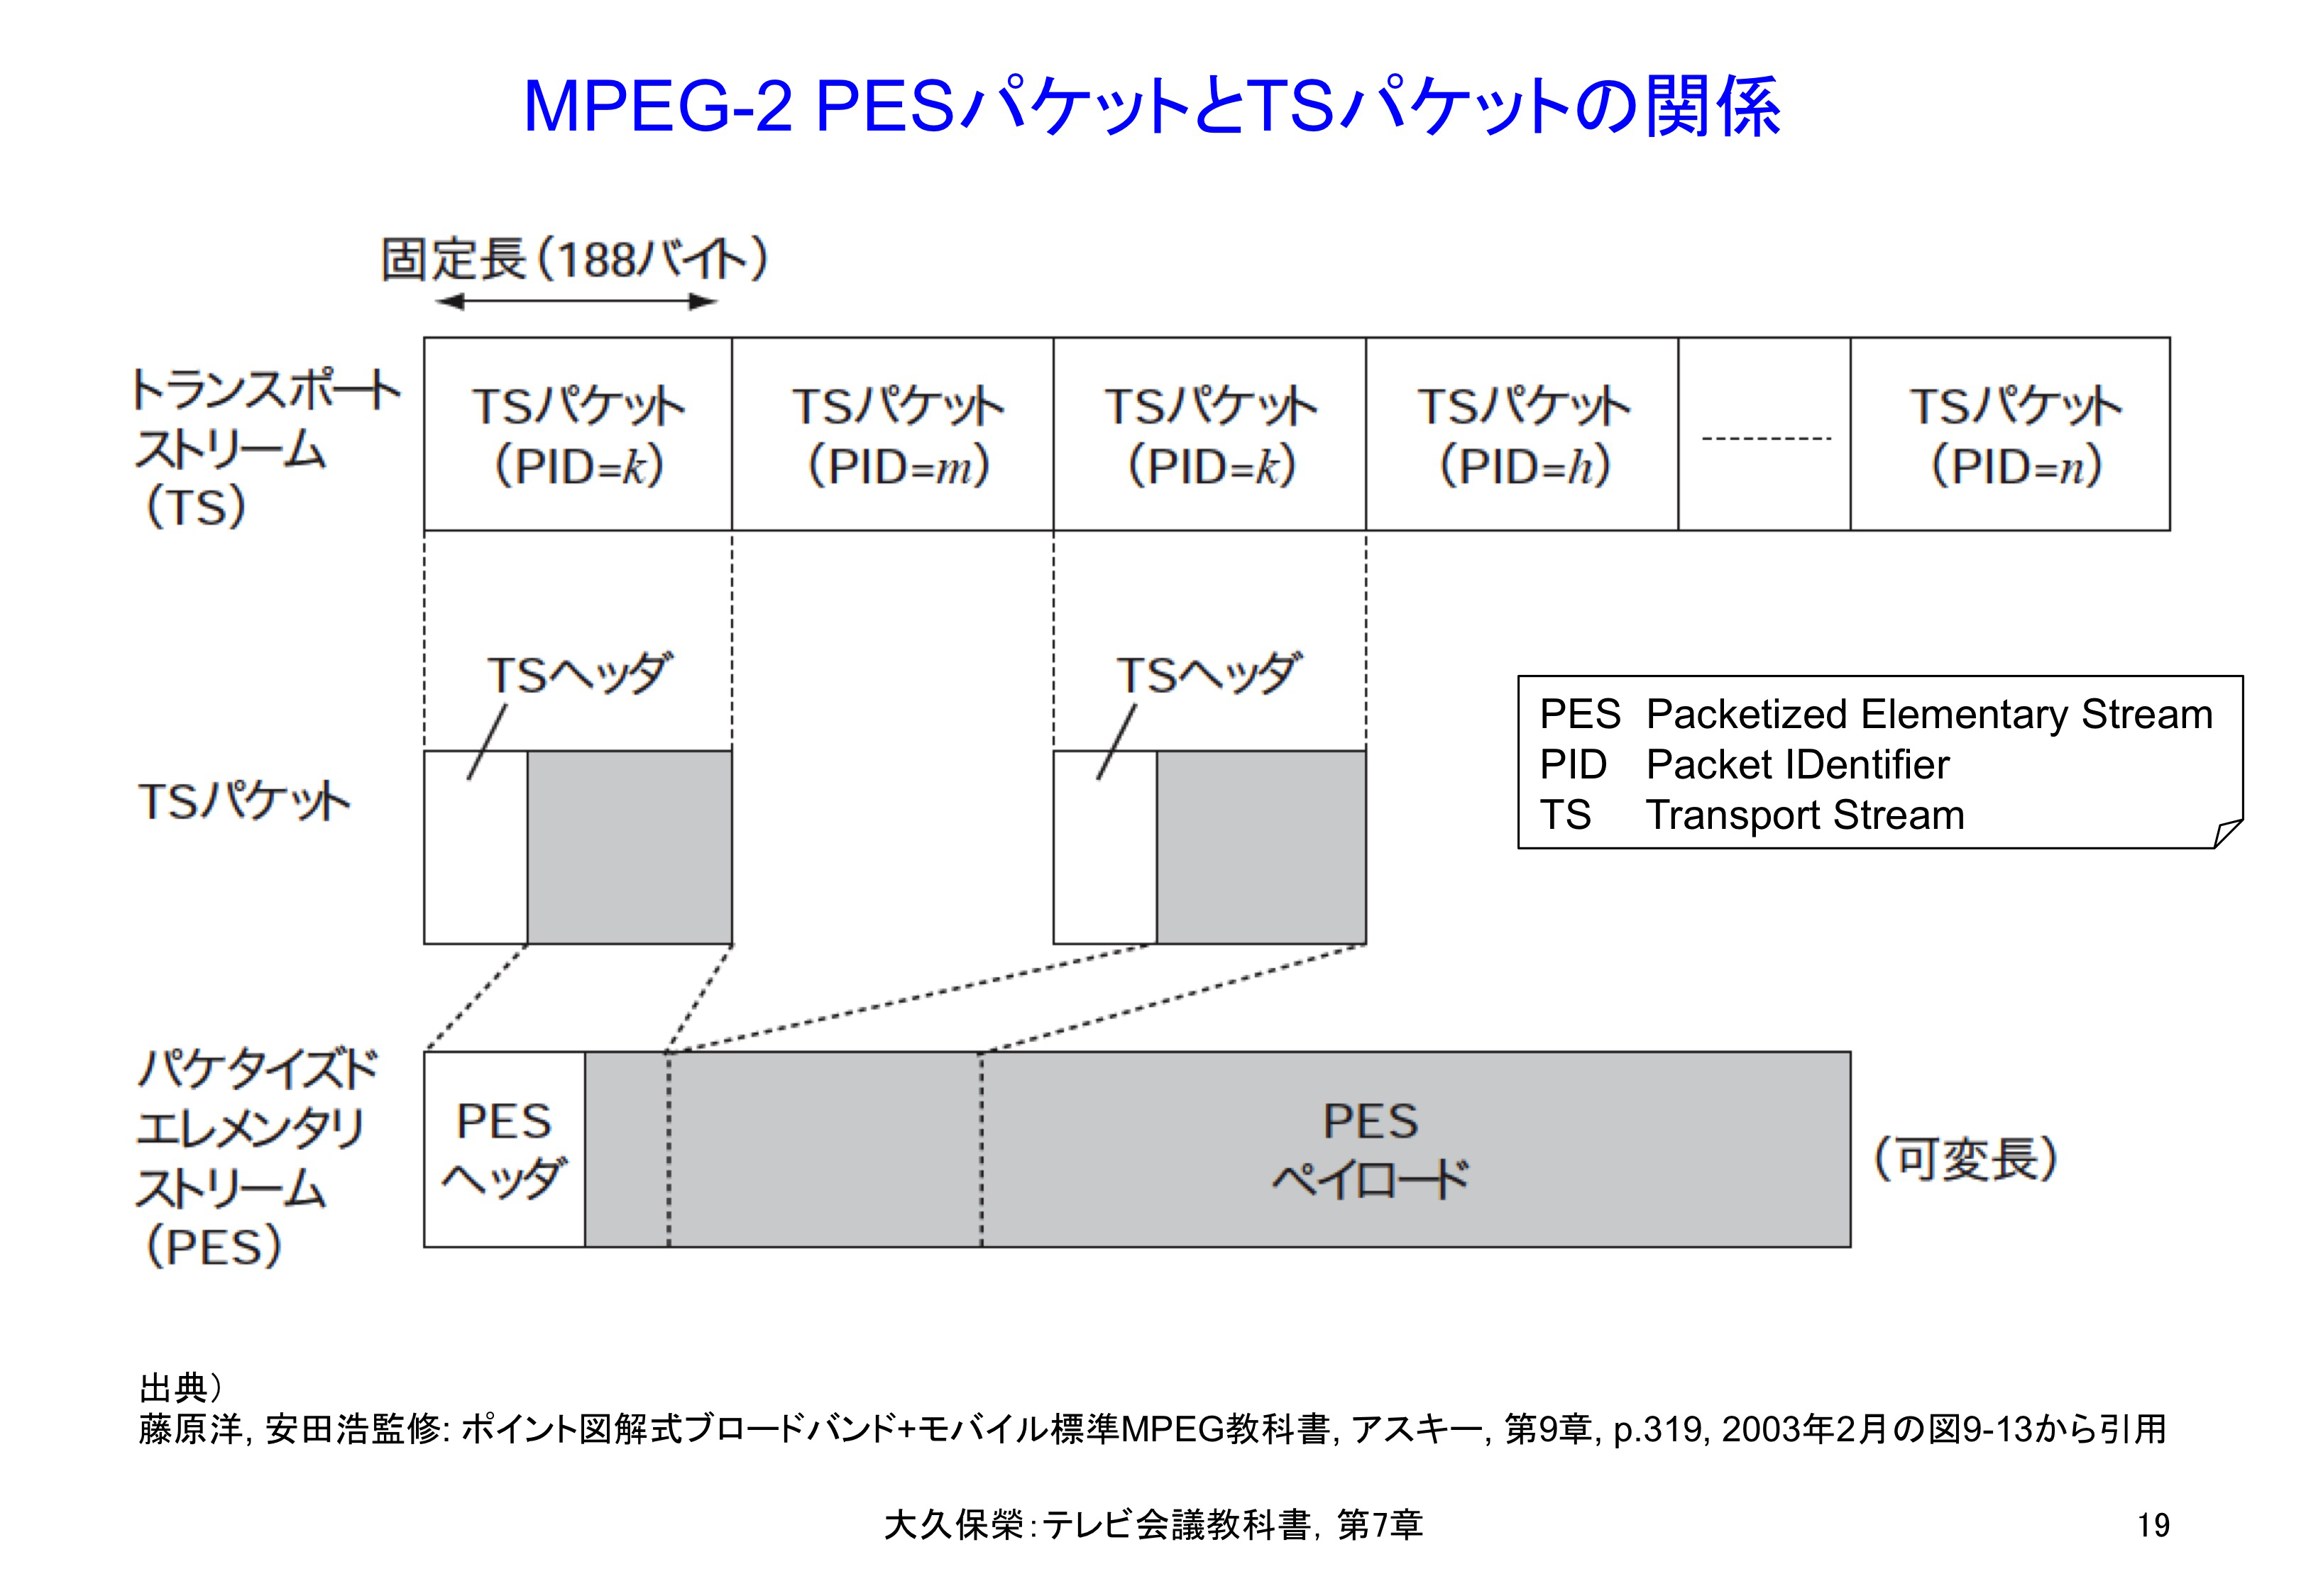 図7-19 MPEG-2 PESパケットとTSパケットの関係